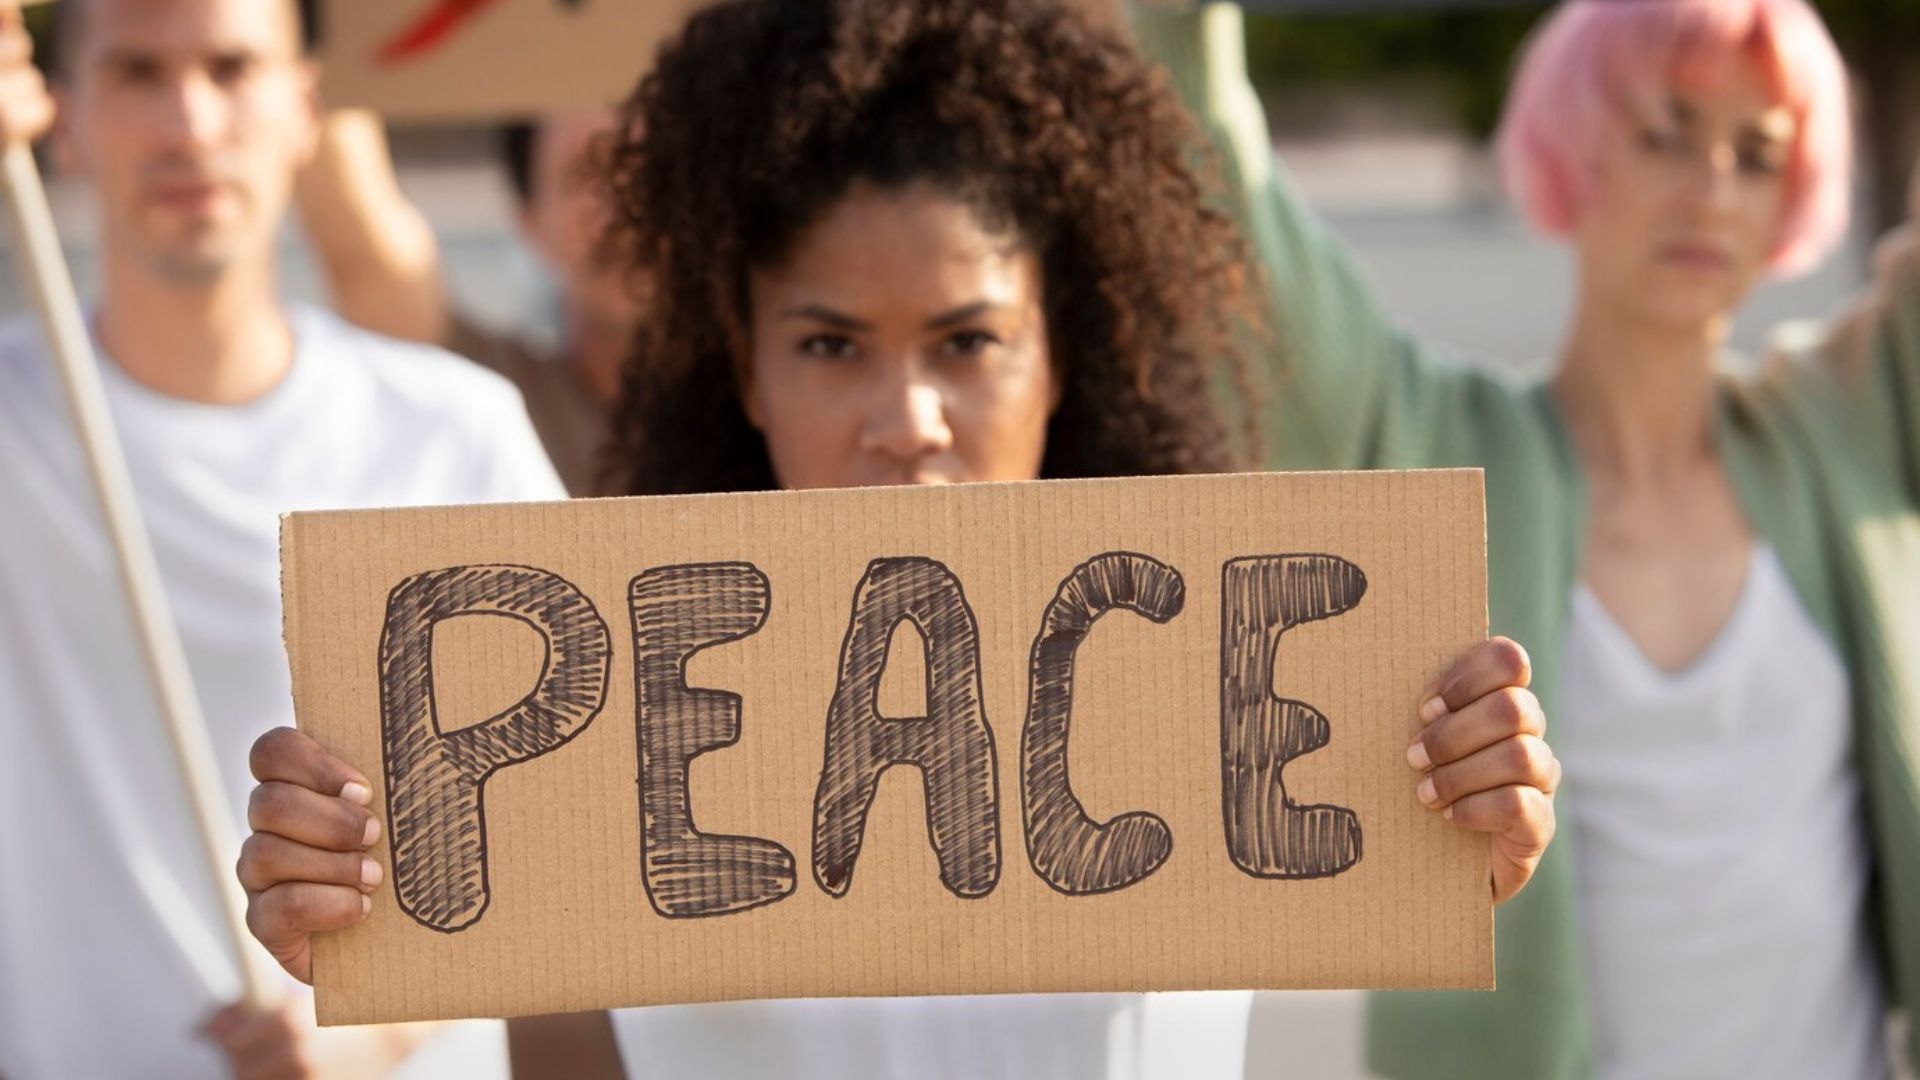 Peace placard